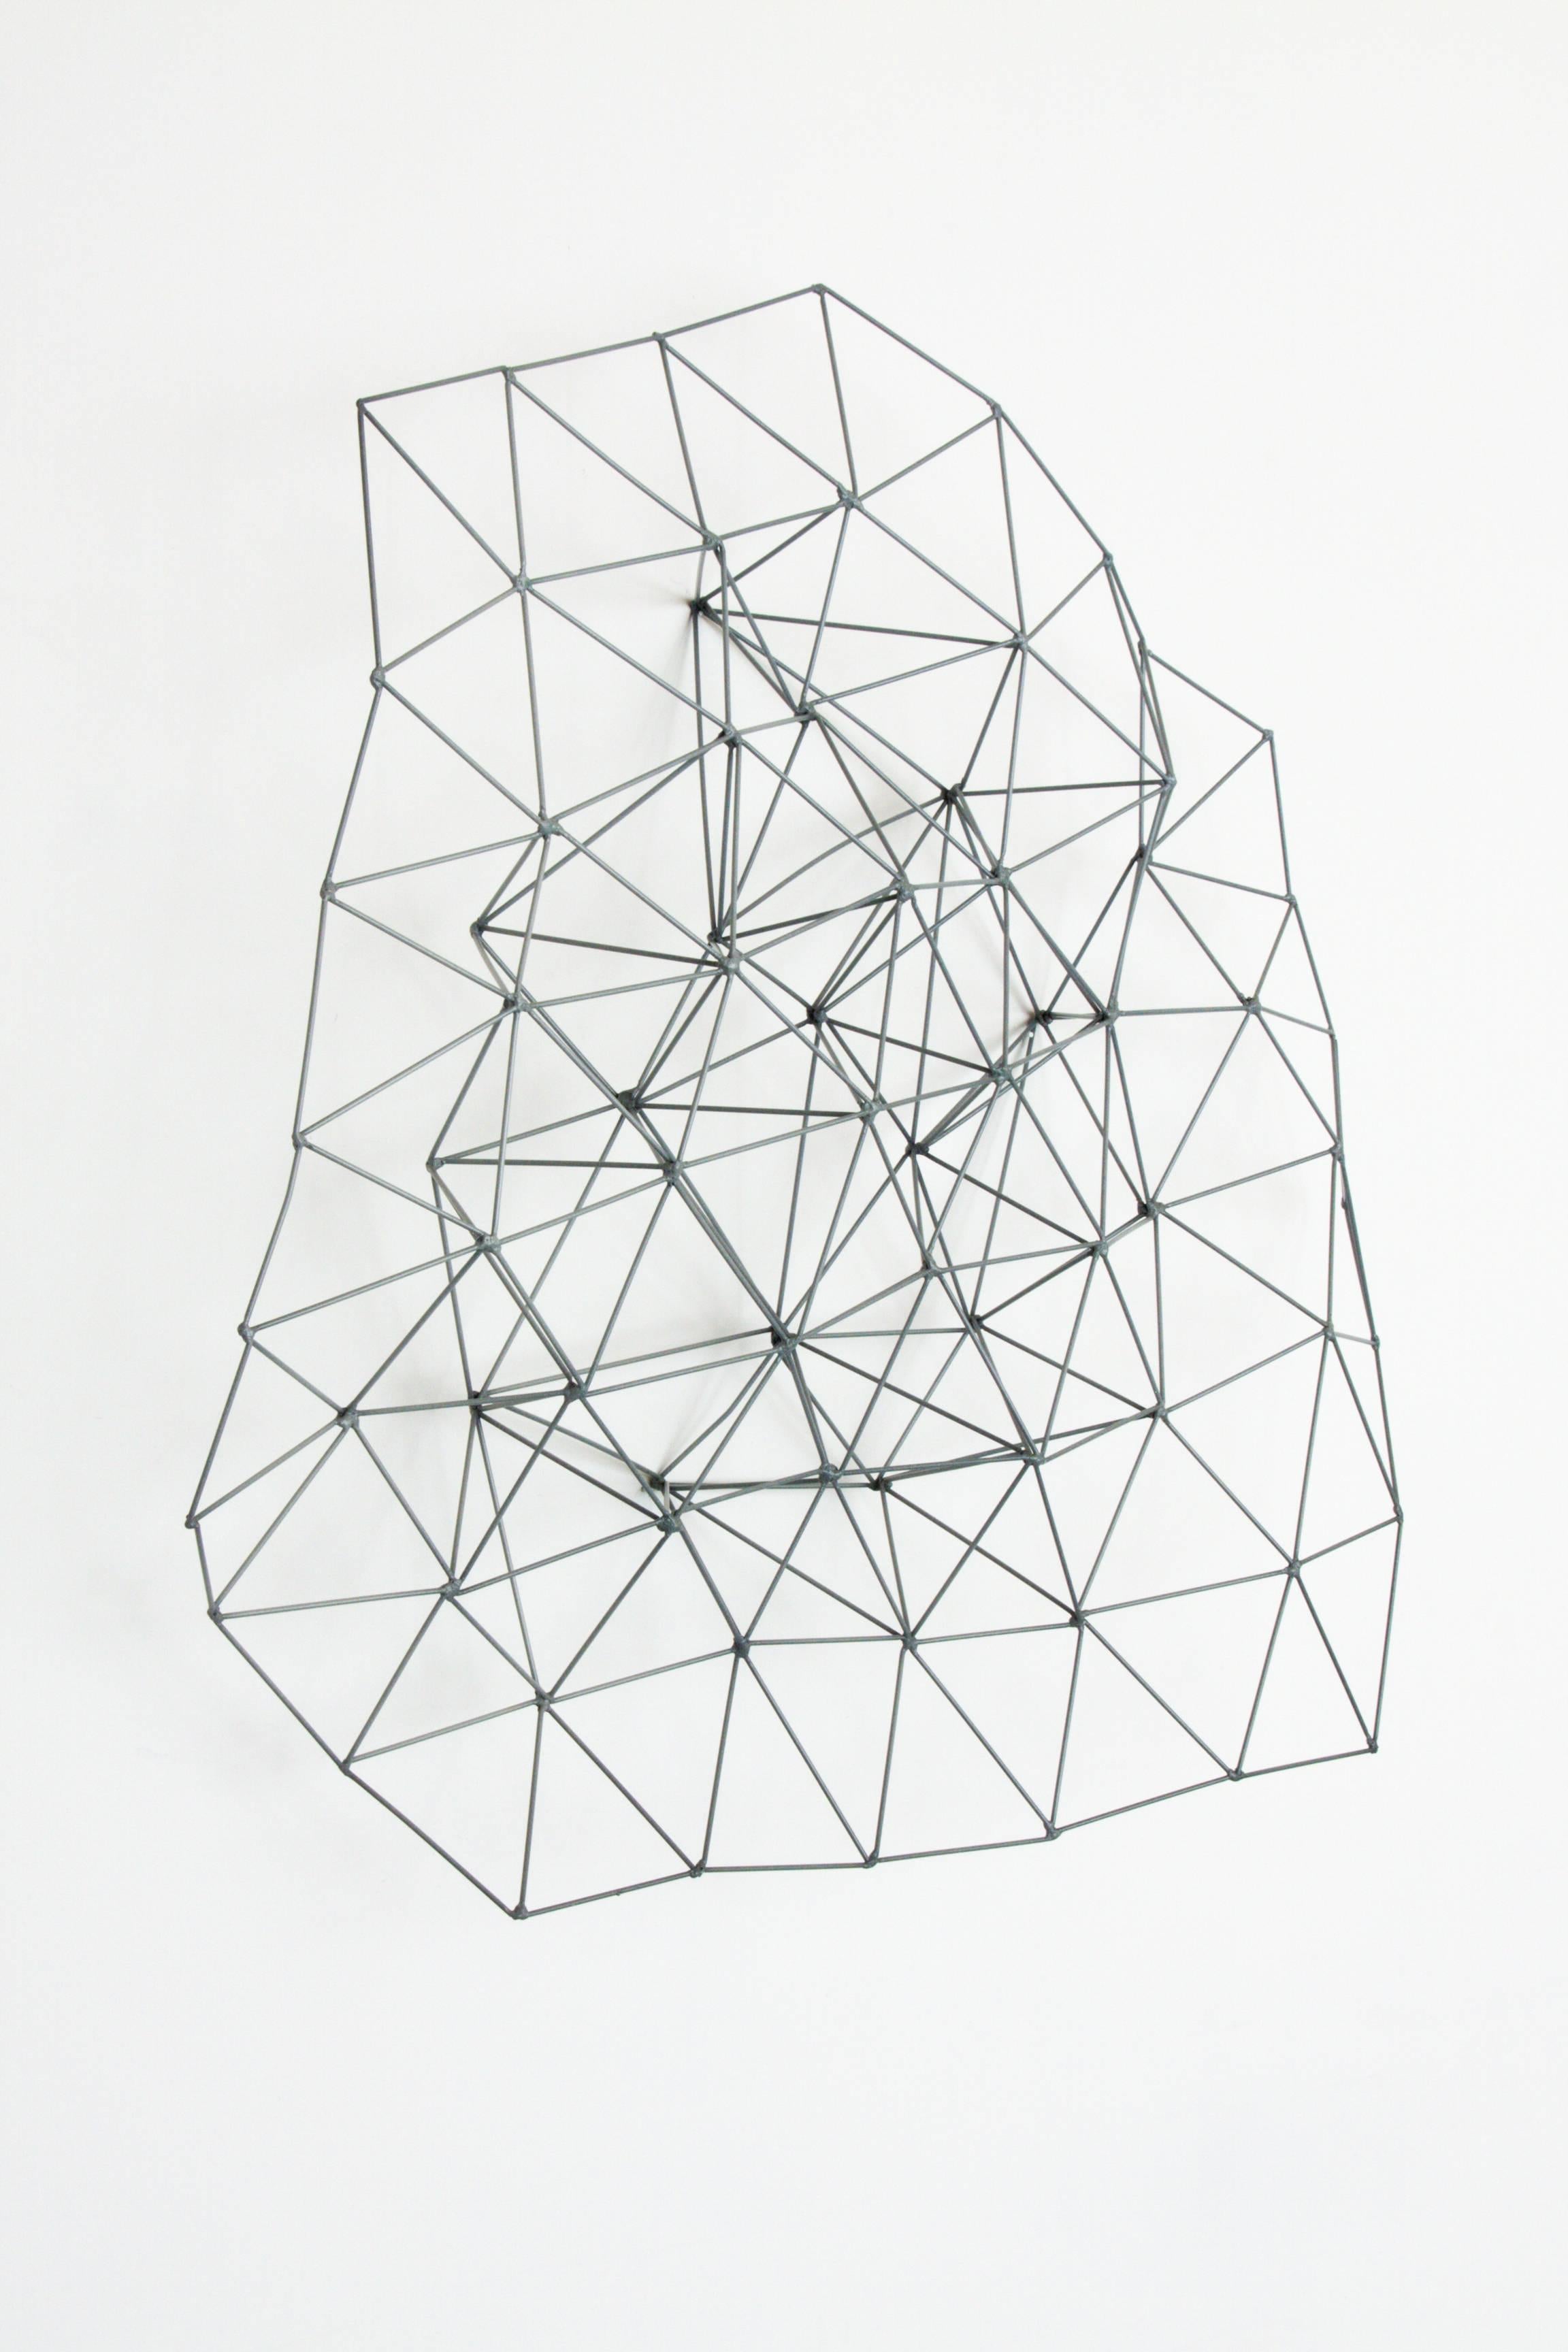 Mehrfach verbundenes Dreieck I – Sculpture von Colleen Wolstenholme